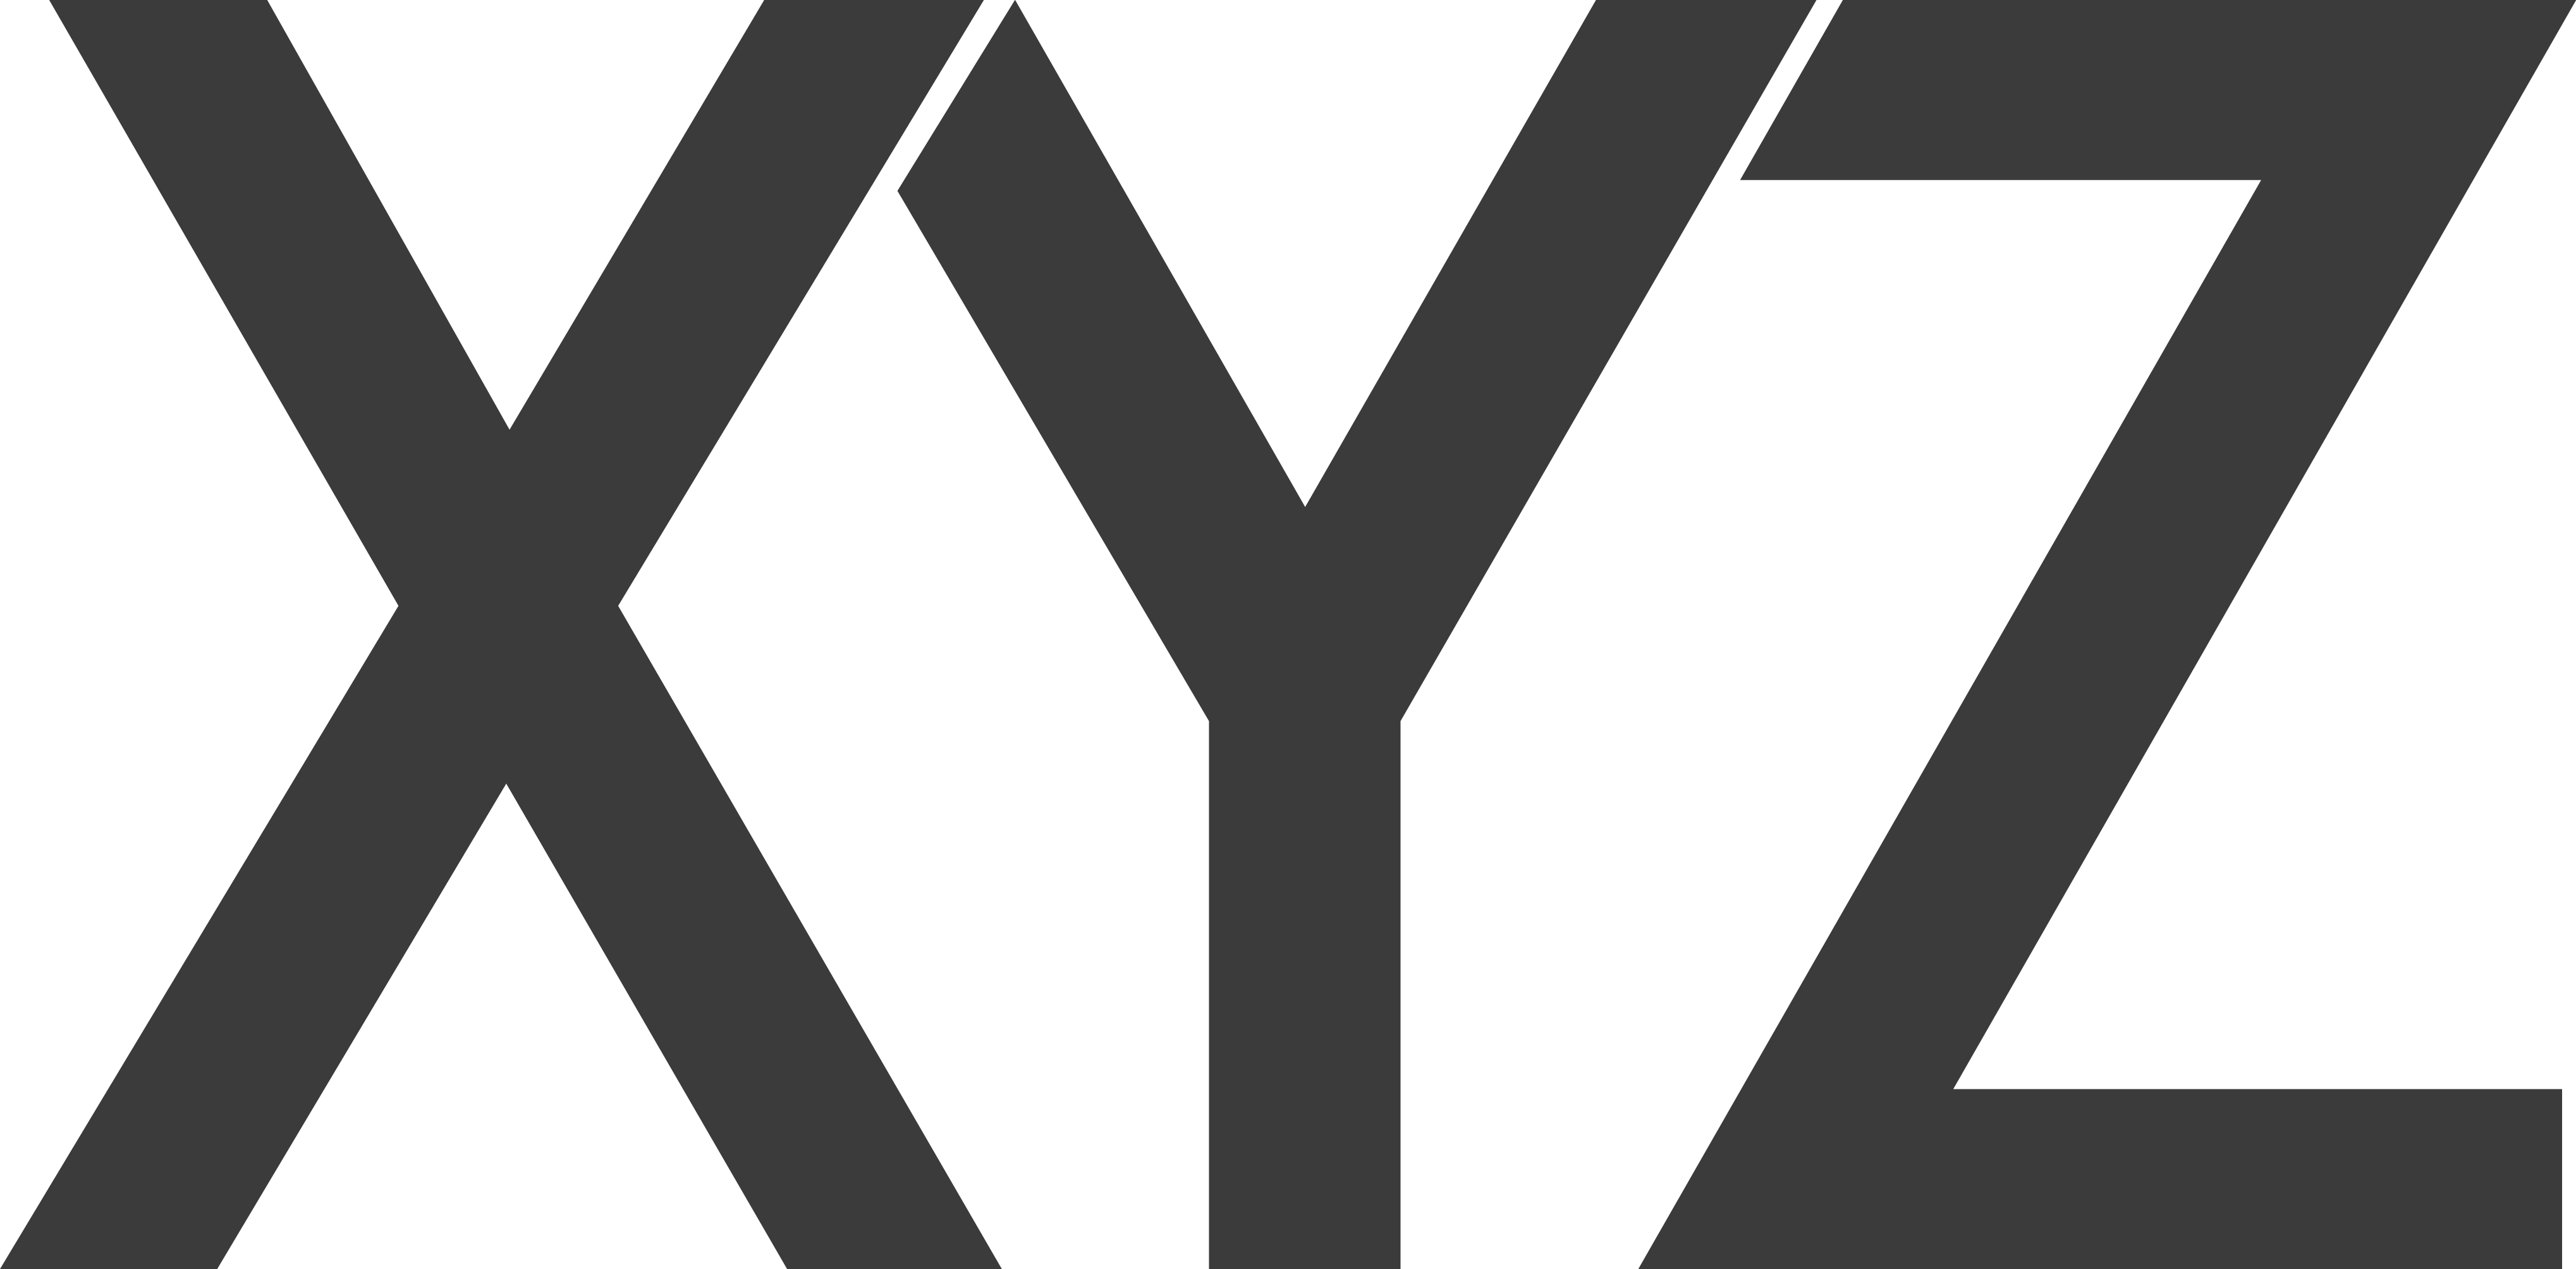 Логотип x. Эмблема Зет. Буква x логотип. Знак xyz. Http lolsteam